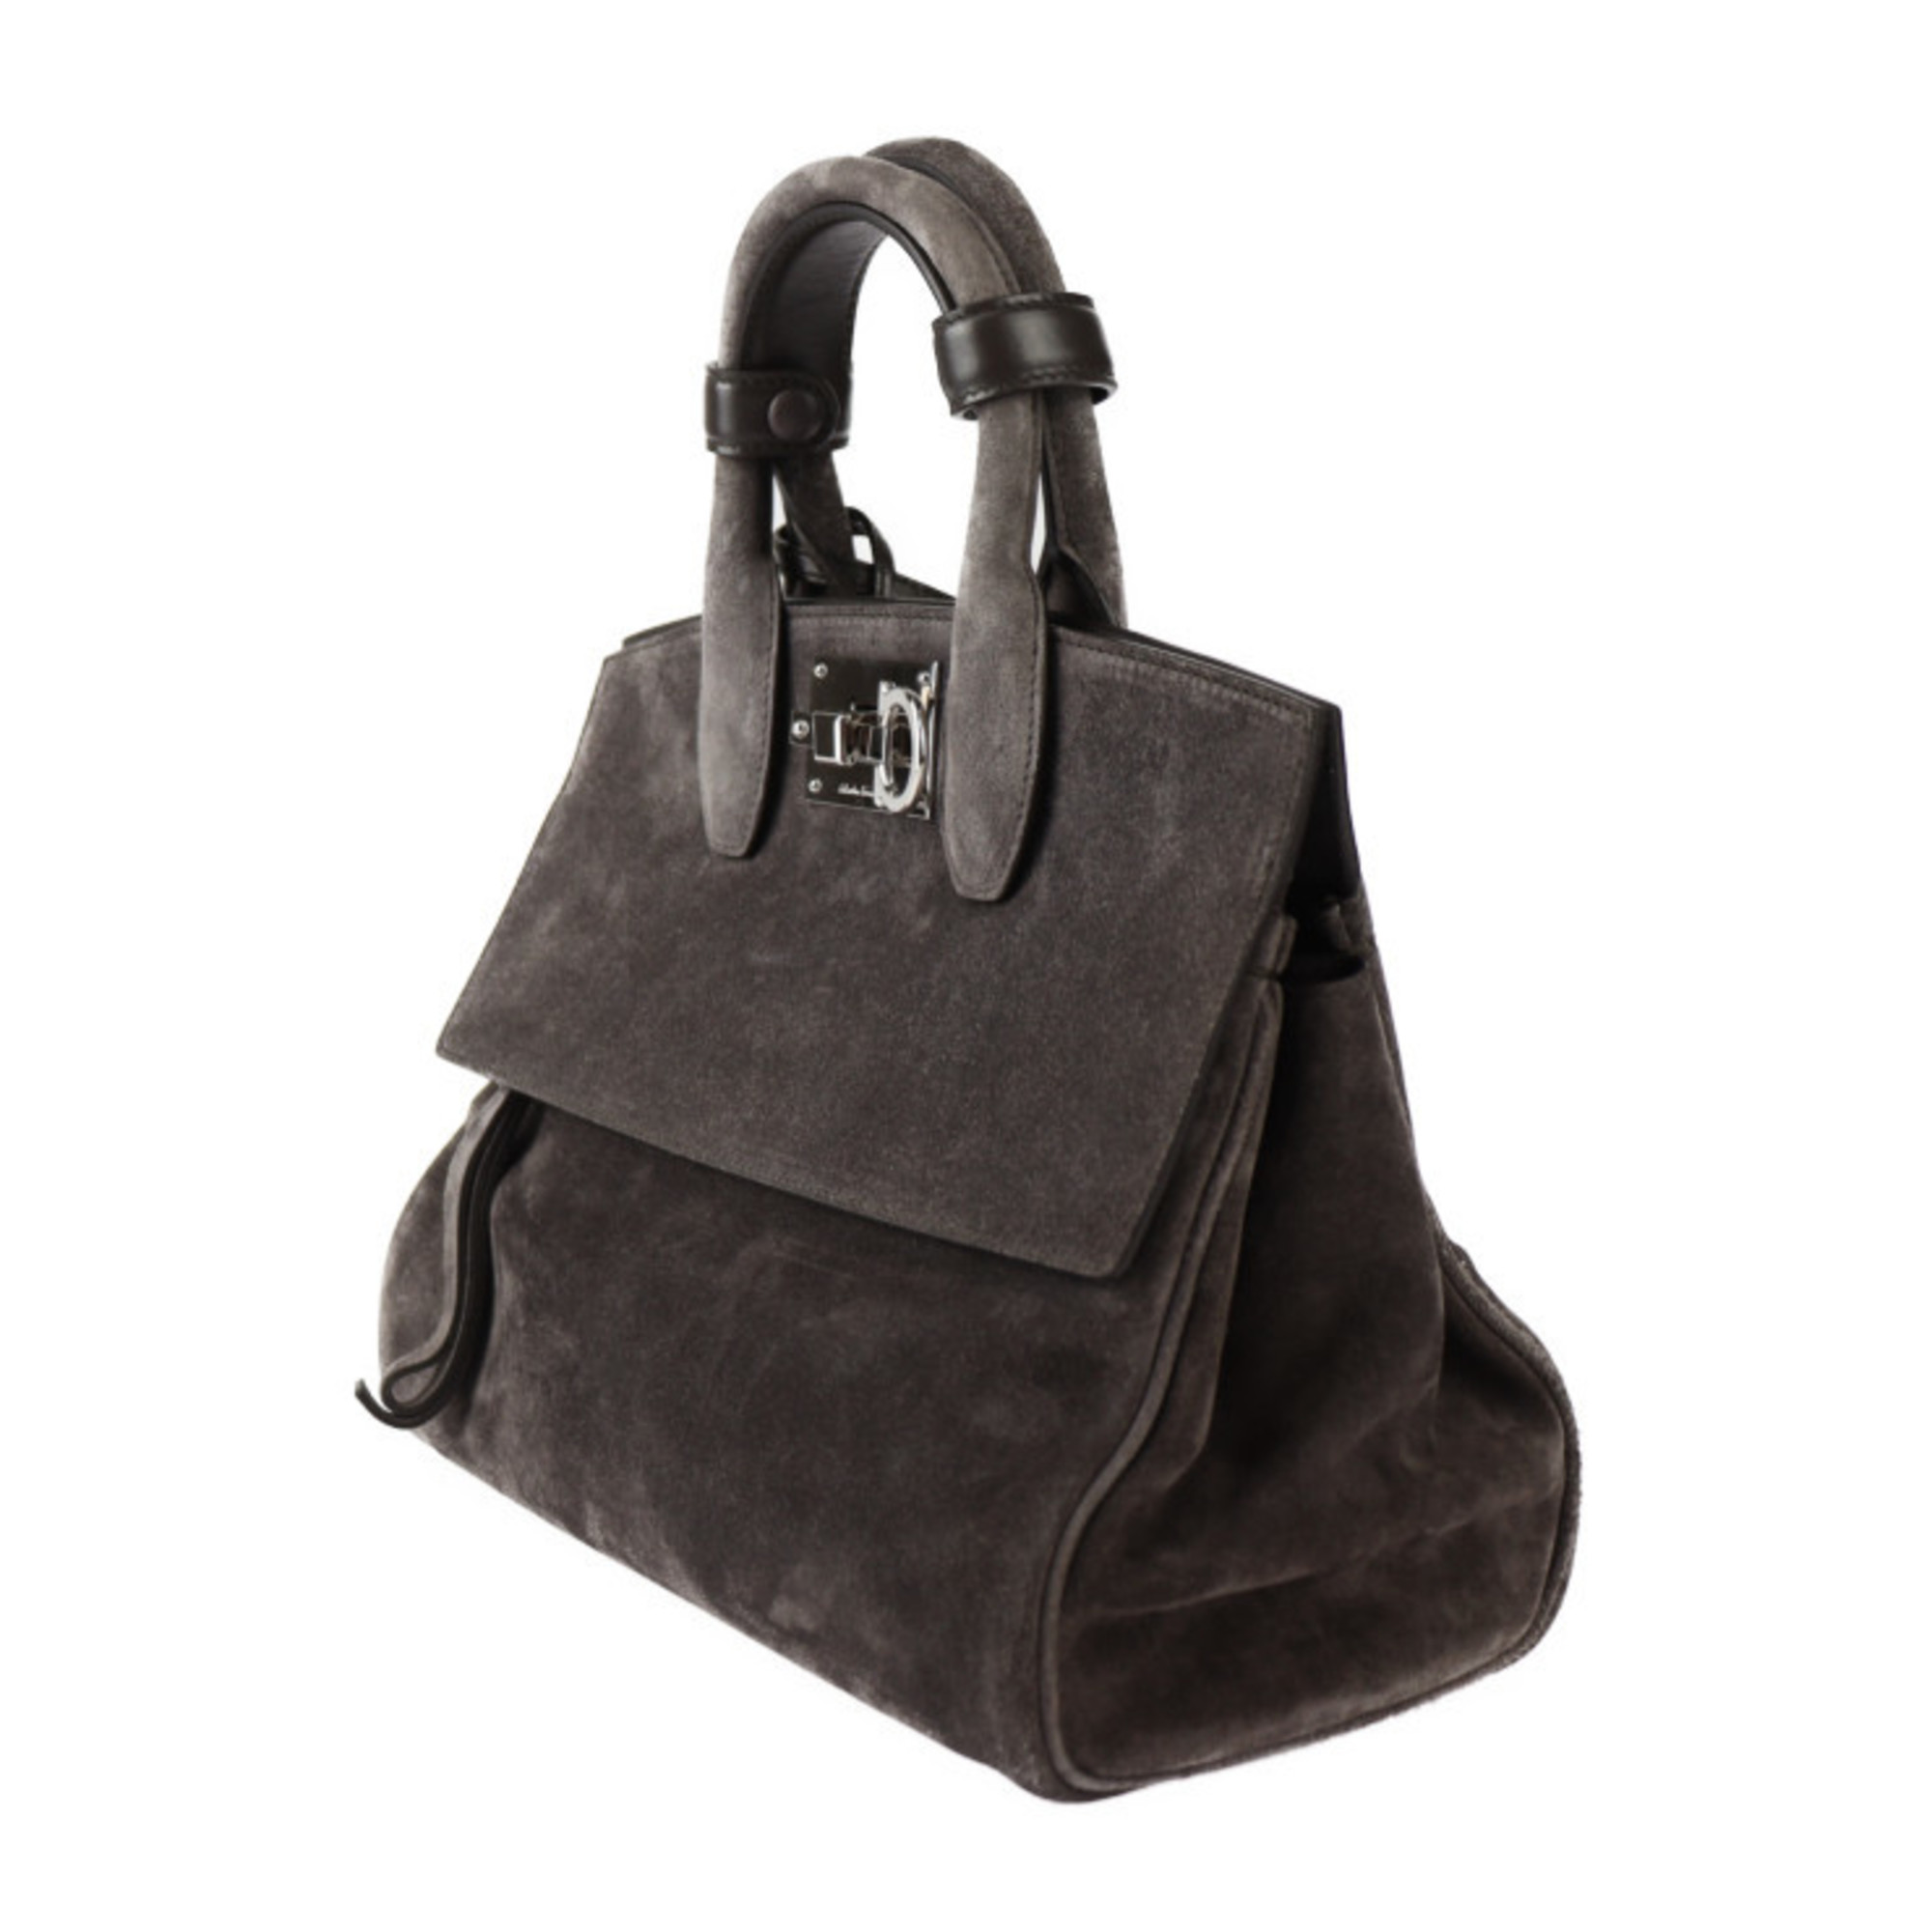 Salvatore Ferragamo Studio Small Bag Gancini Handbag 21 H796 Suede Gray Shoulder